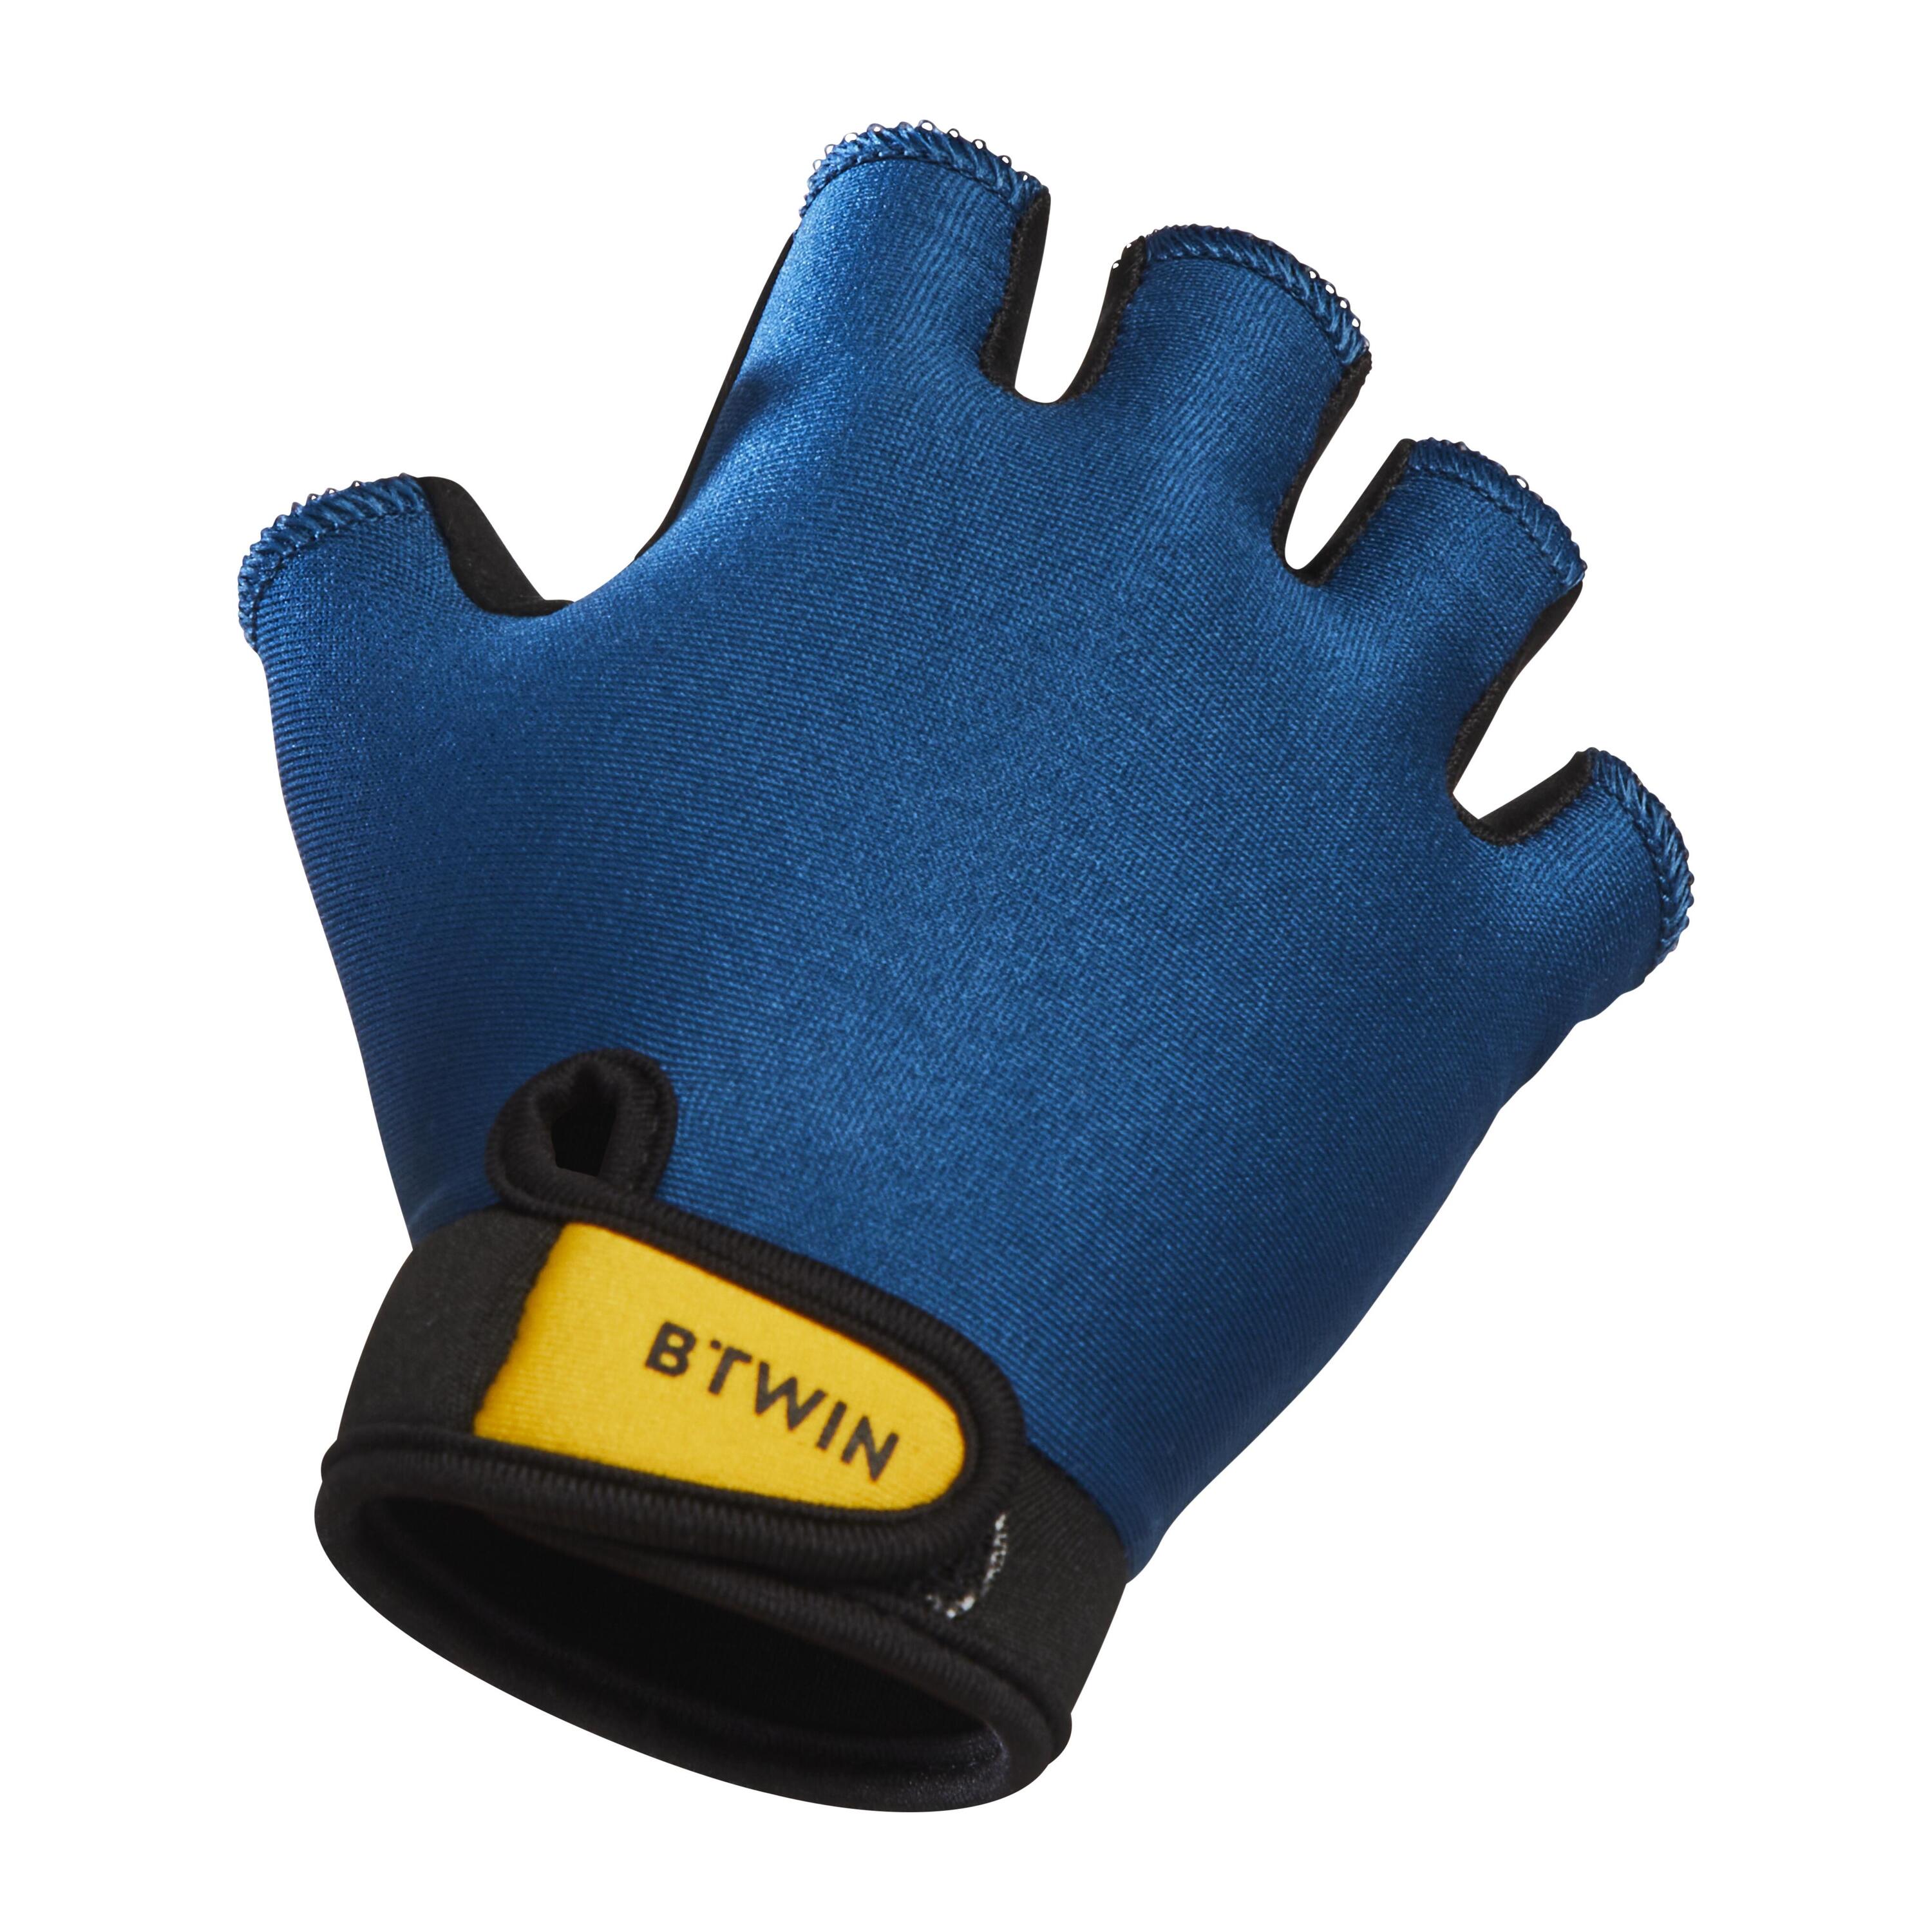 Kids' Cycling Fingerless Gloves - Blue 2/4